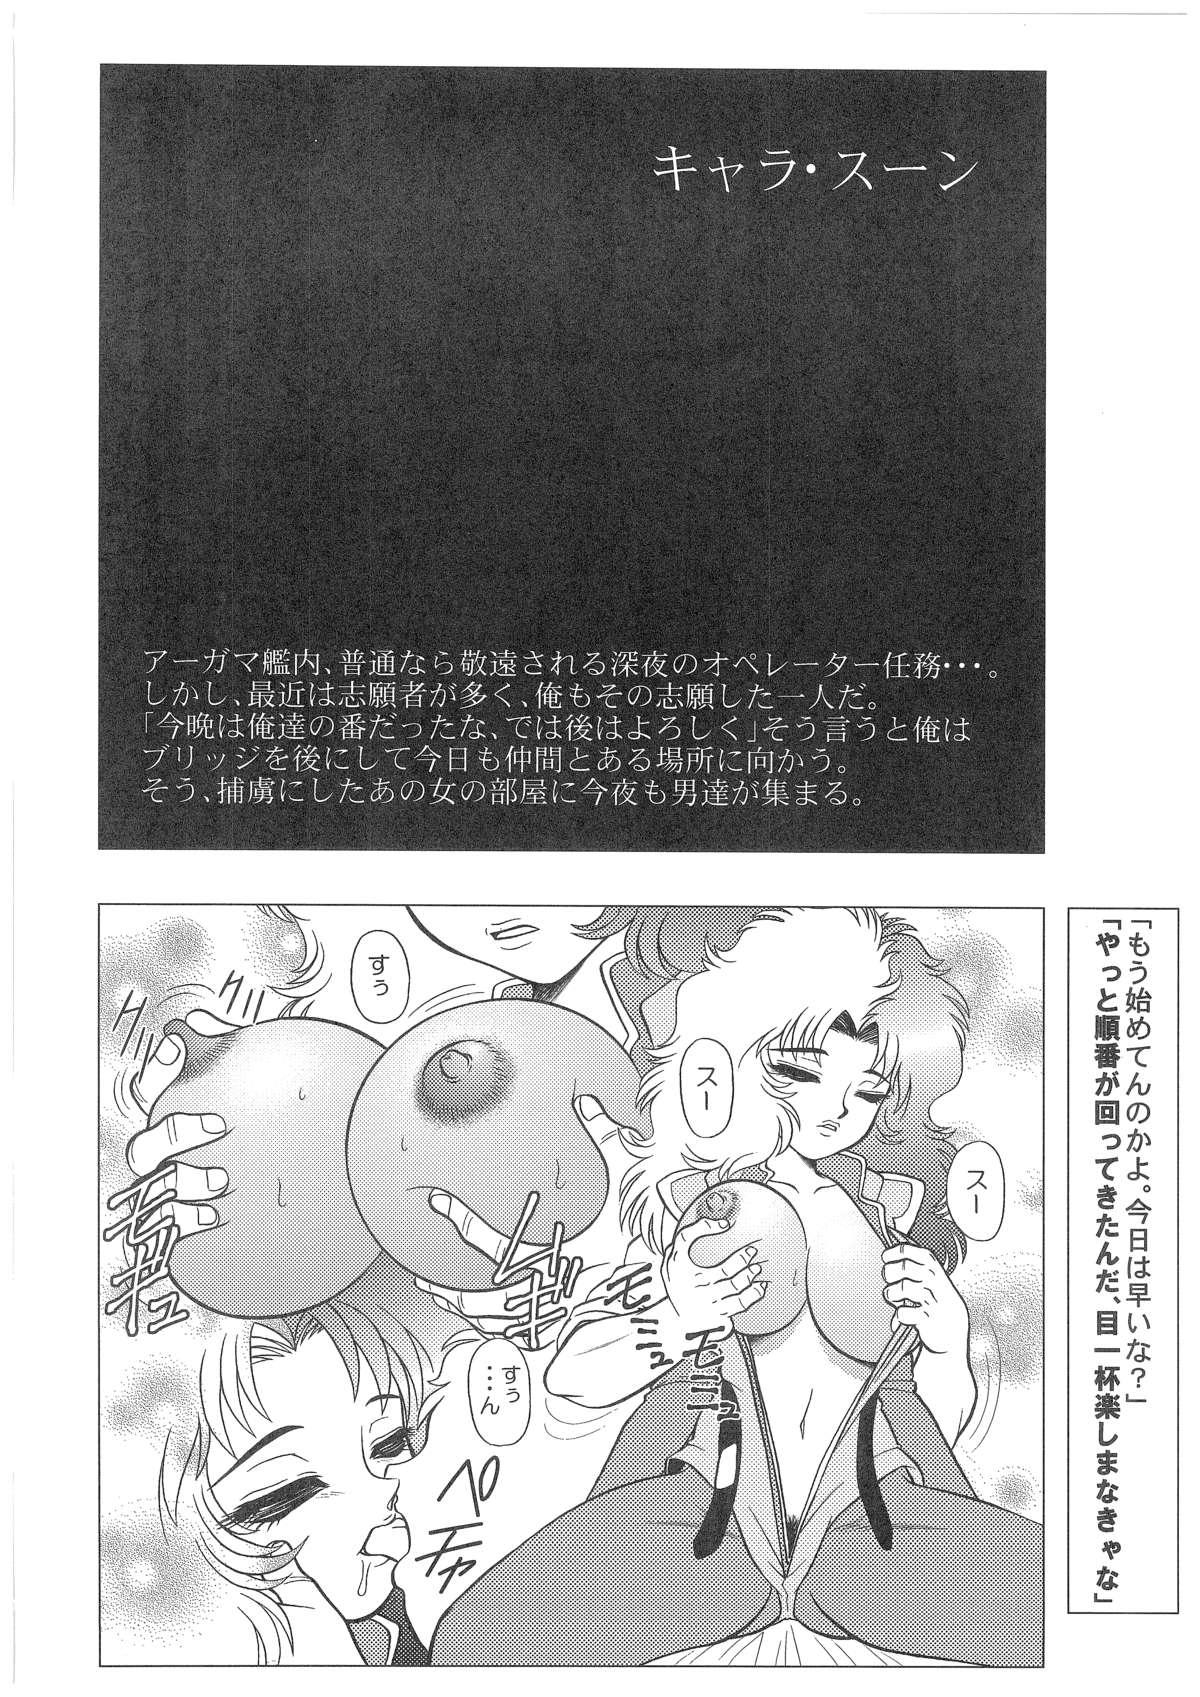 Bigbutt CHARA EMU W☆B 007 - Gundam Victory gundam Gundam 0080 Tit - Page 11